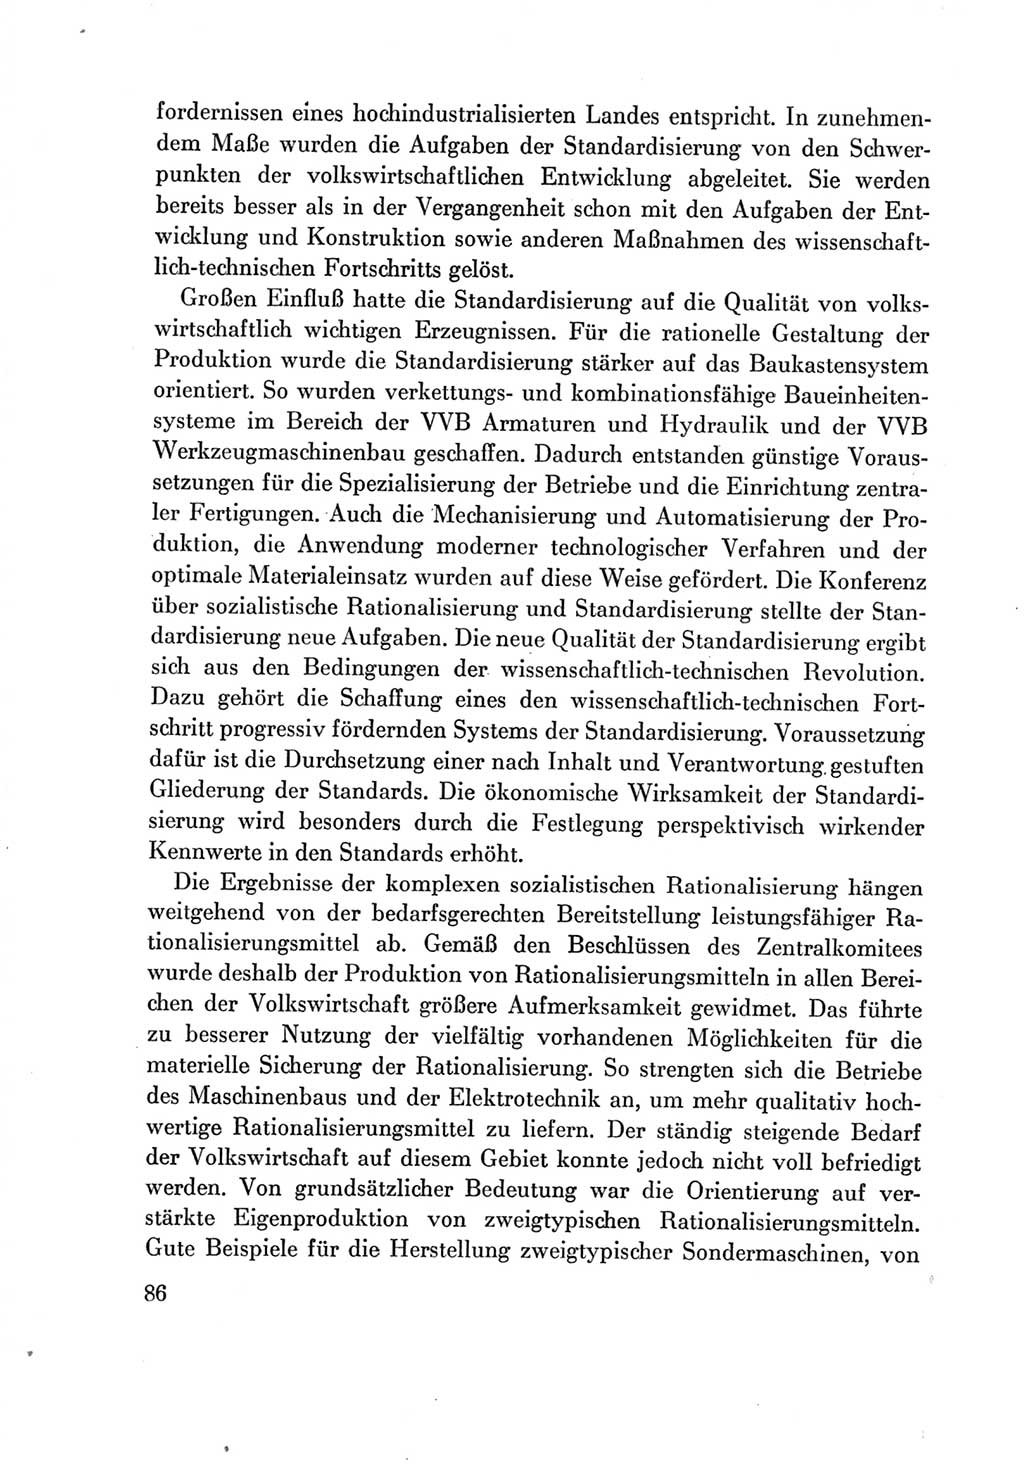 Protokoll der Verhandlungen des Ⅶ. Parteitages der Sozialistischen Einheitspartei Deutschlands (SED) [Deutsche Demokratische Republik (DDR)] 1967, Band Ⅳ, Seite 86 (Prot. Verh. Ⅶ. PT SED DDR 1967, Bd. Ⅳ, S. 86)